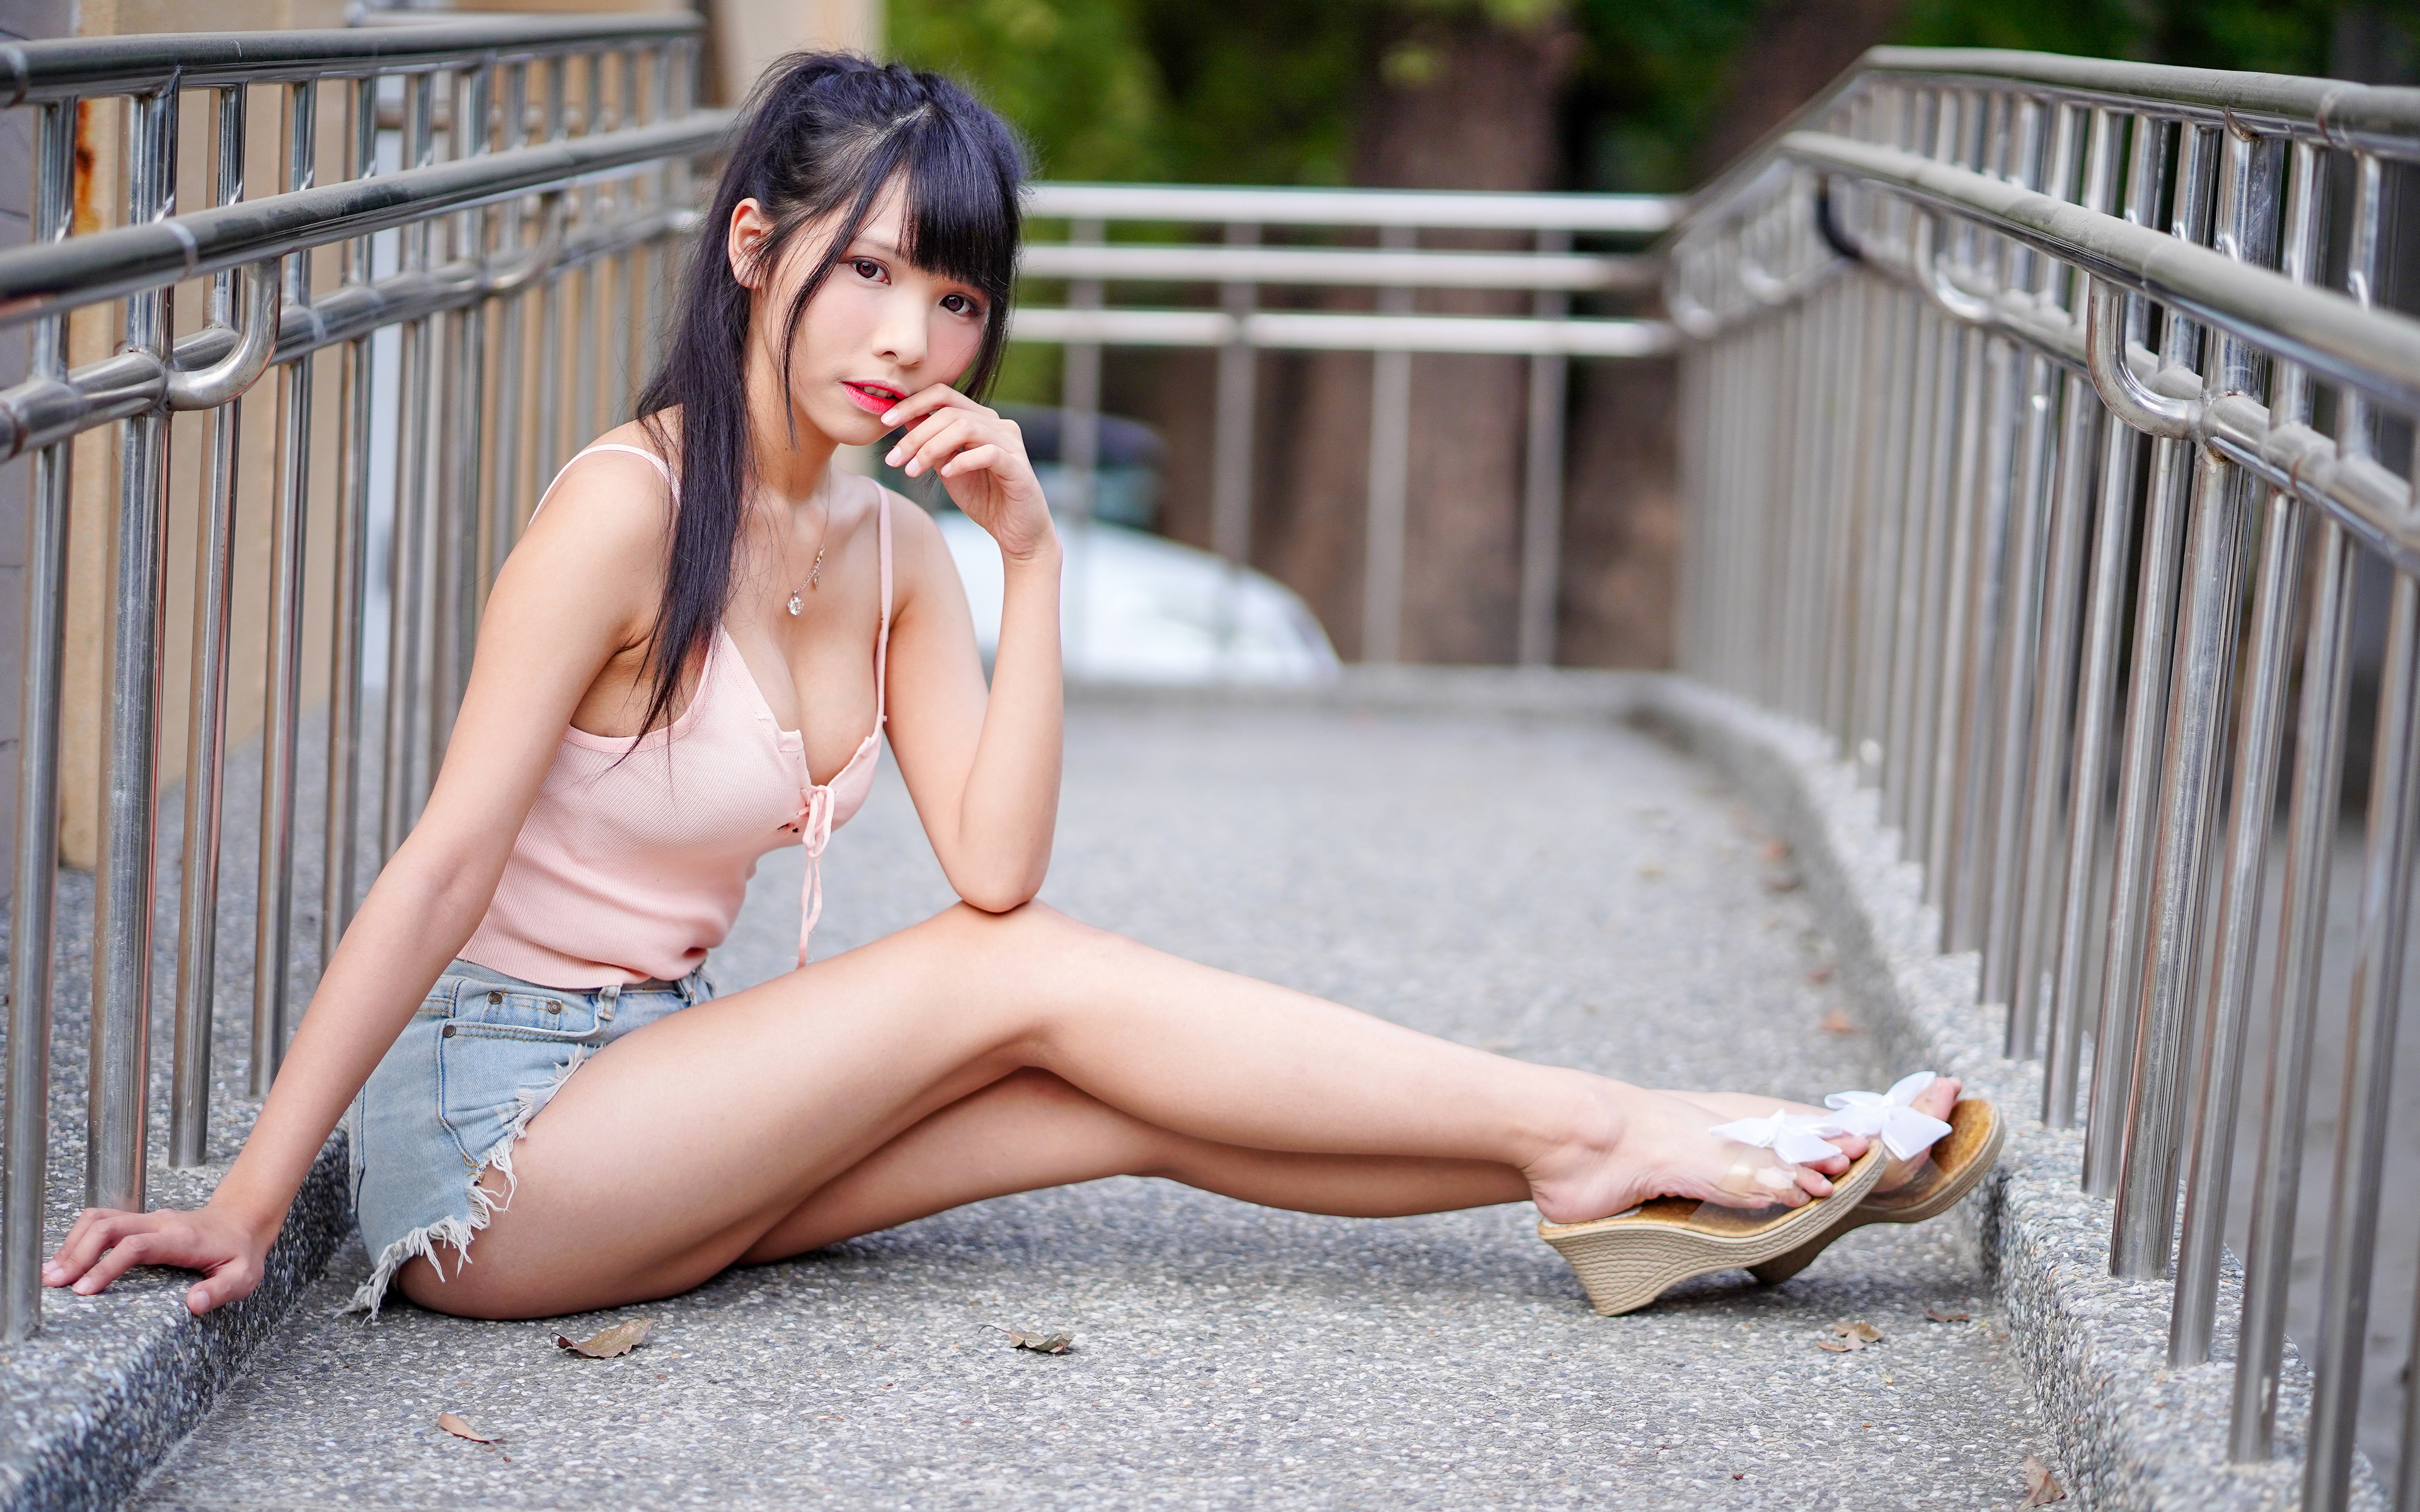 Asian Model Women Long Hair Dark Hair Women Outdoors Sitting Vicky Ponytail Railings Barefoot Sandal 3840x2400